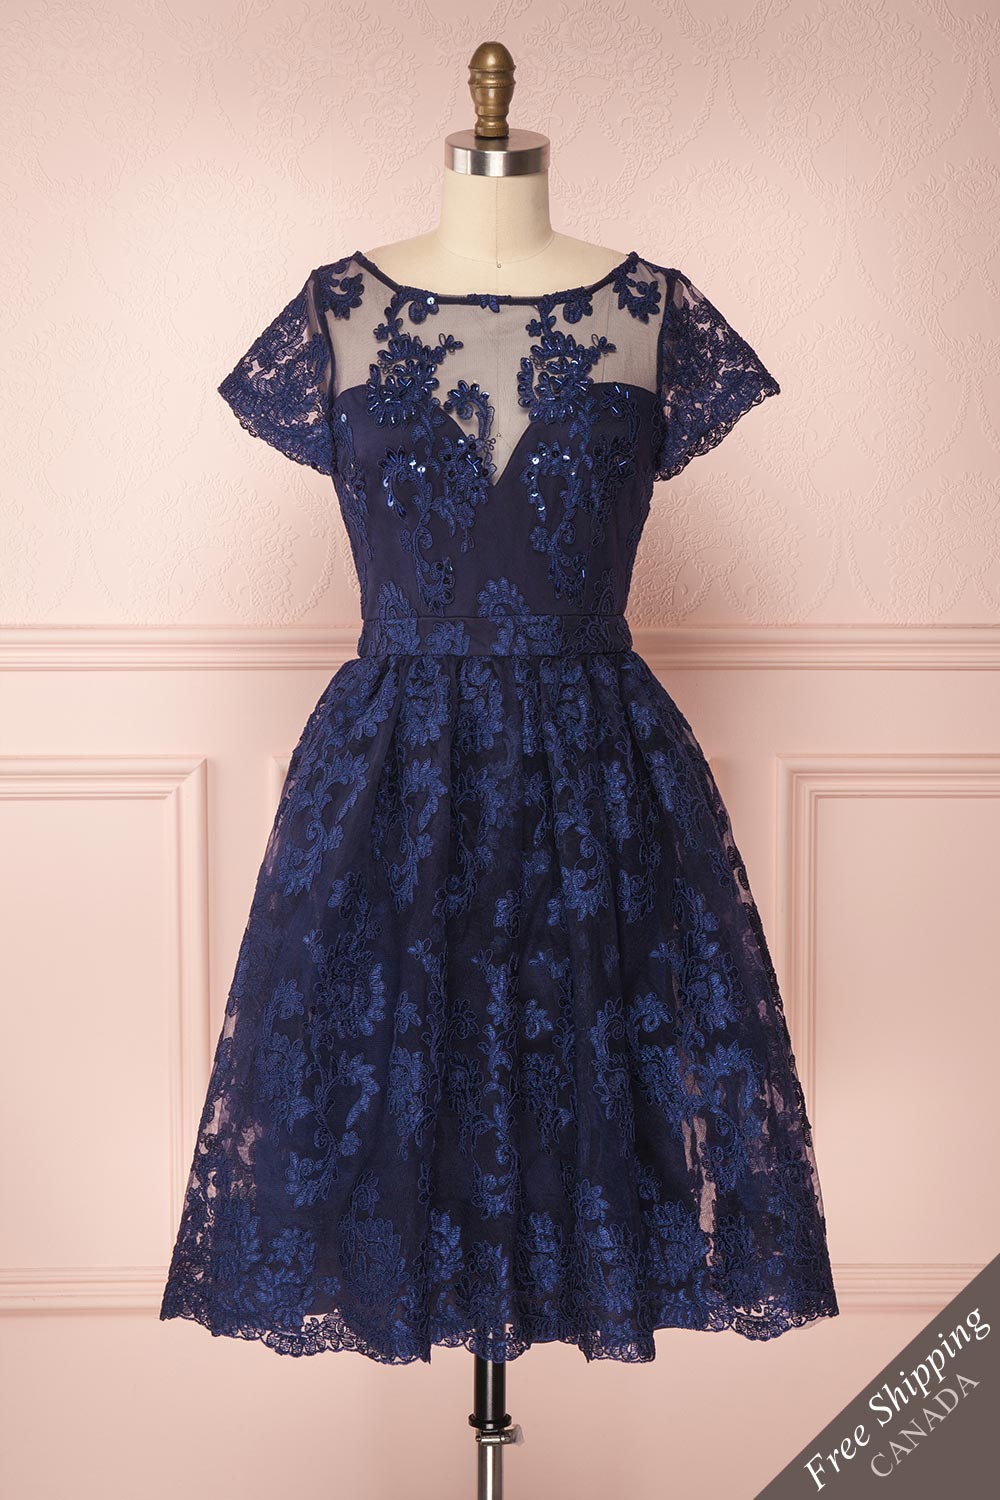 Agun Bleu Navy Blue Floral Embroidered A-Line Dress | Boutique 1861